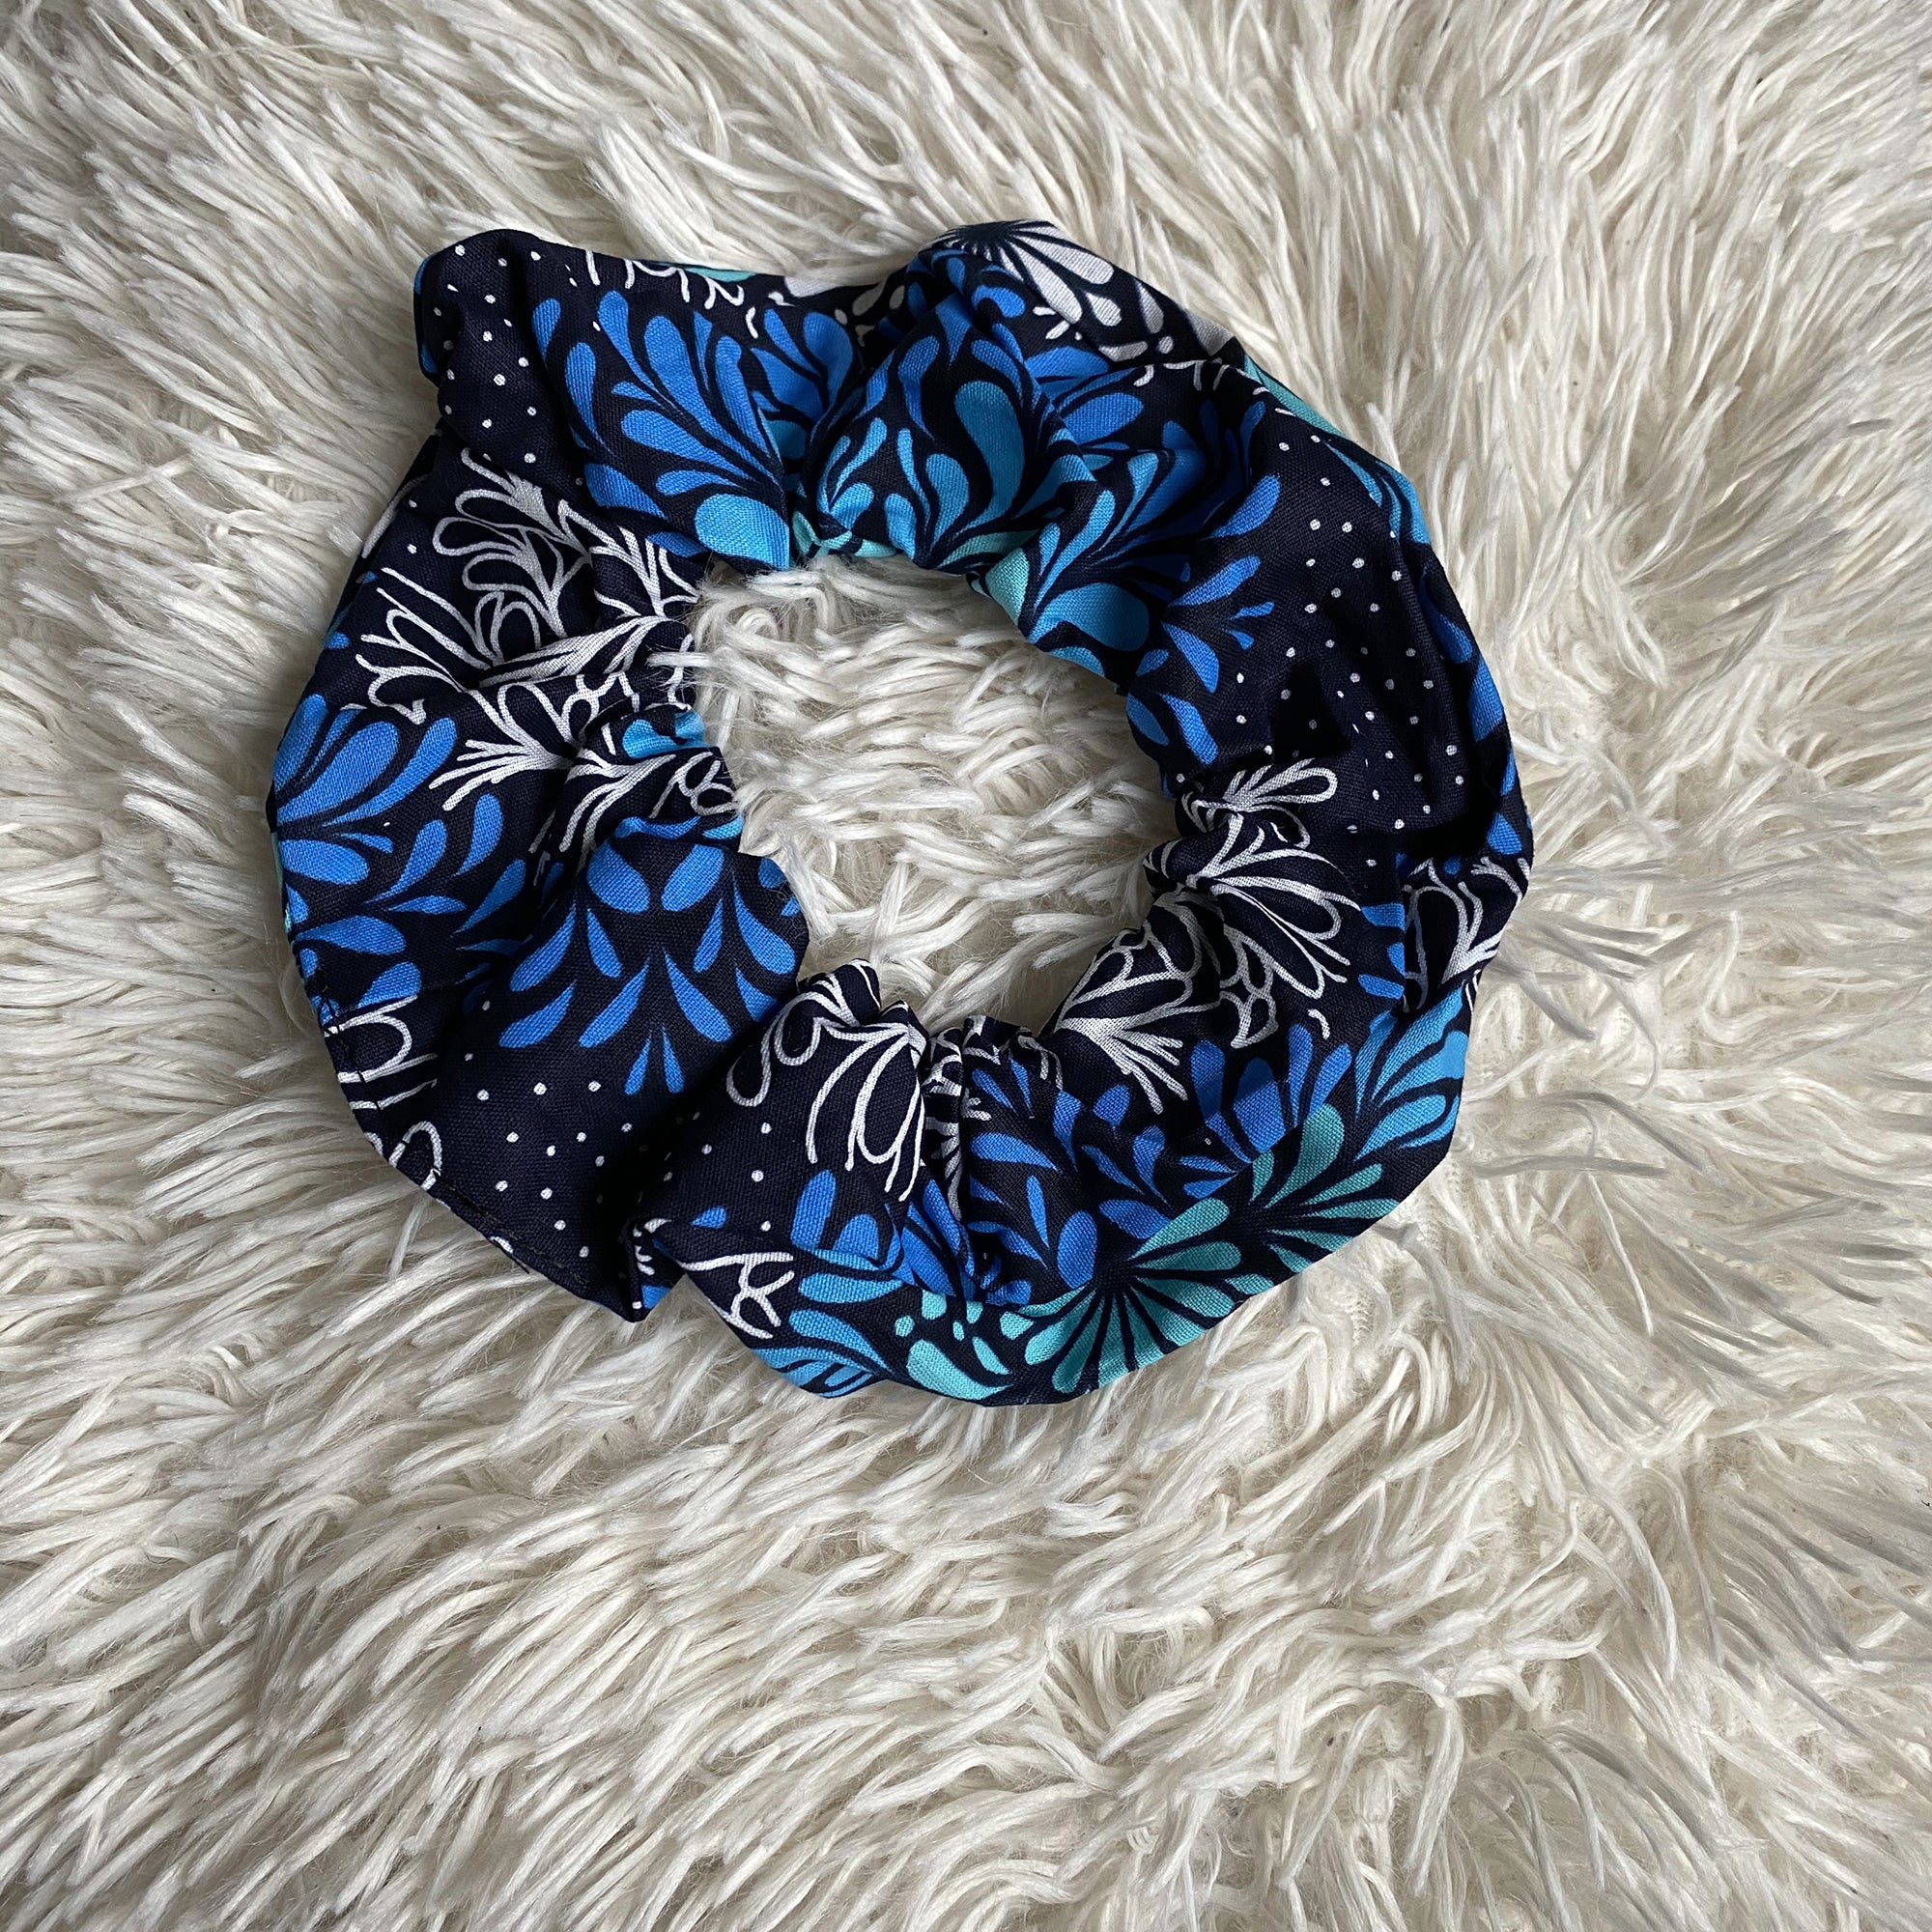 Scrunchie estampado africano - Accesorios para el cabello Adultos XL - Azul / negro